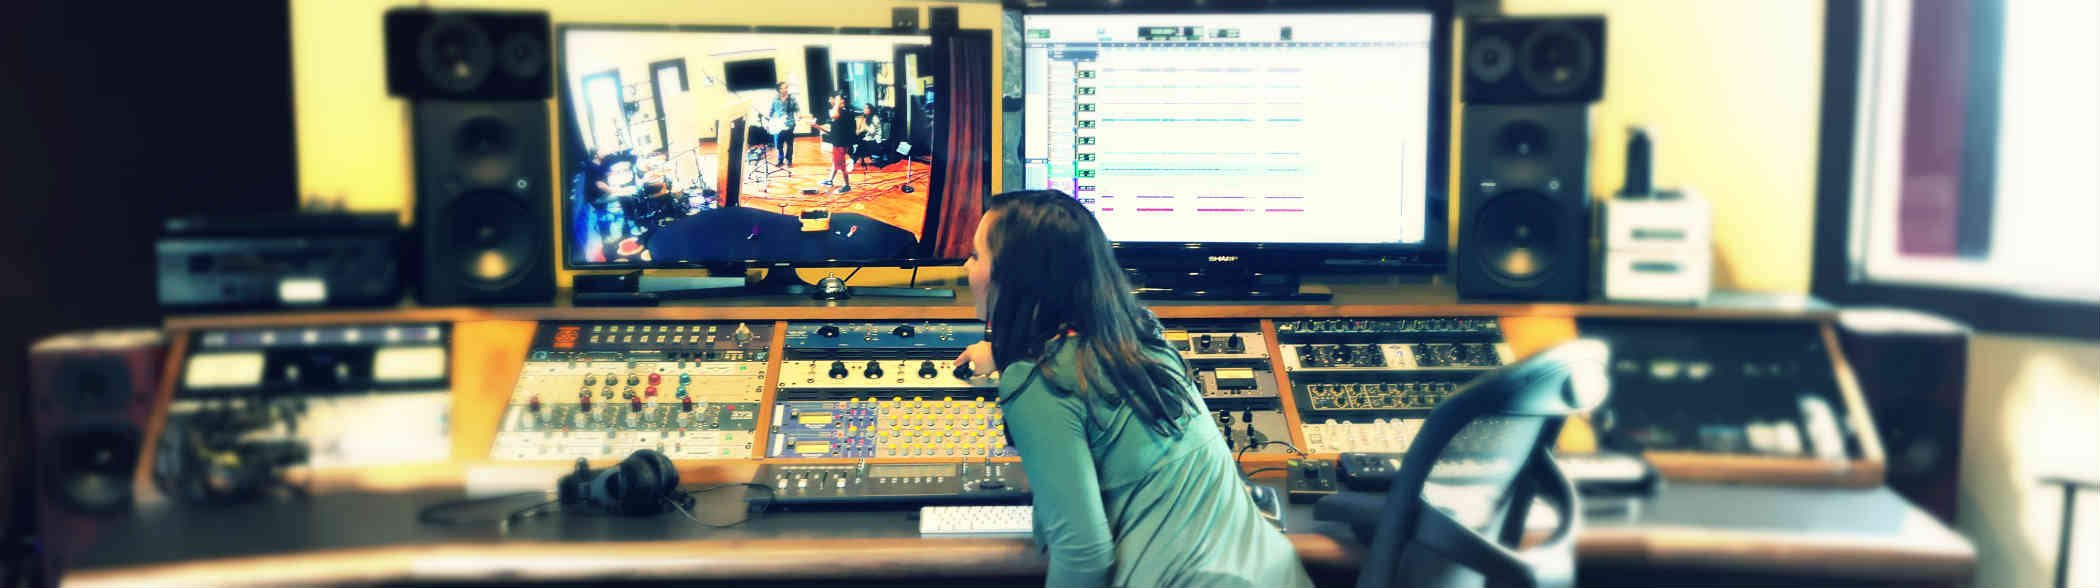 Recording Studio Mixing